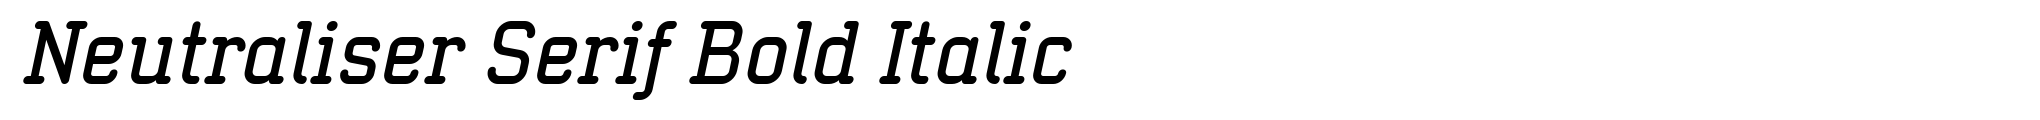 Neutraliser Serif Bold Italic image